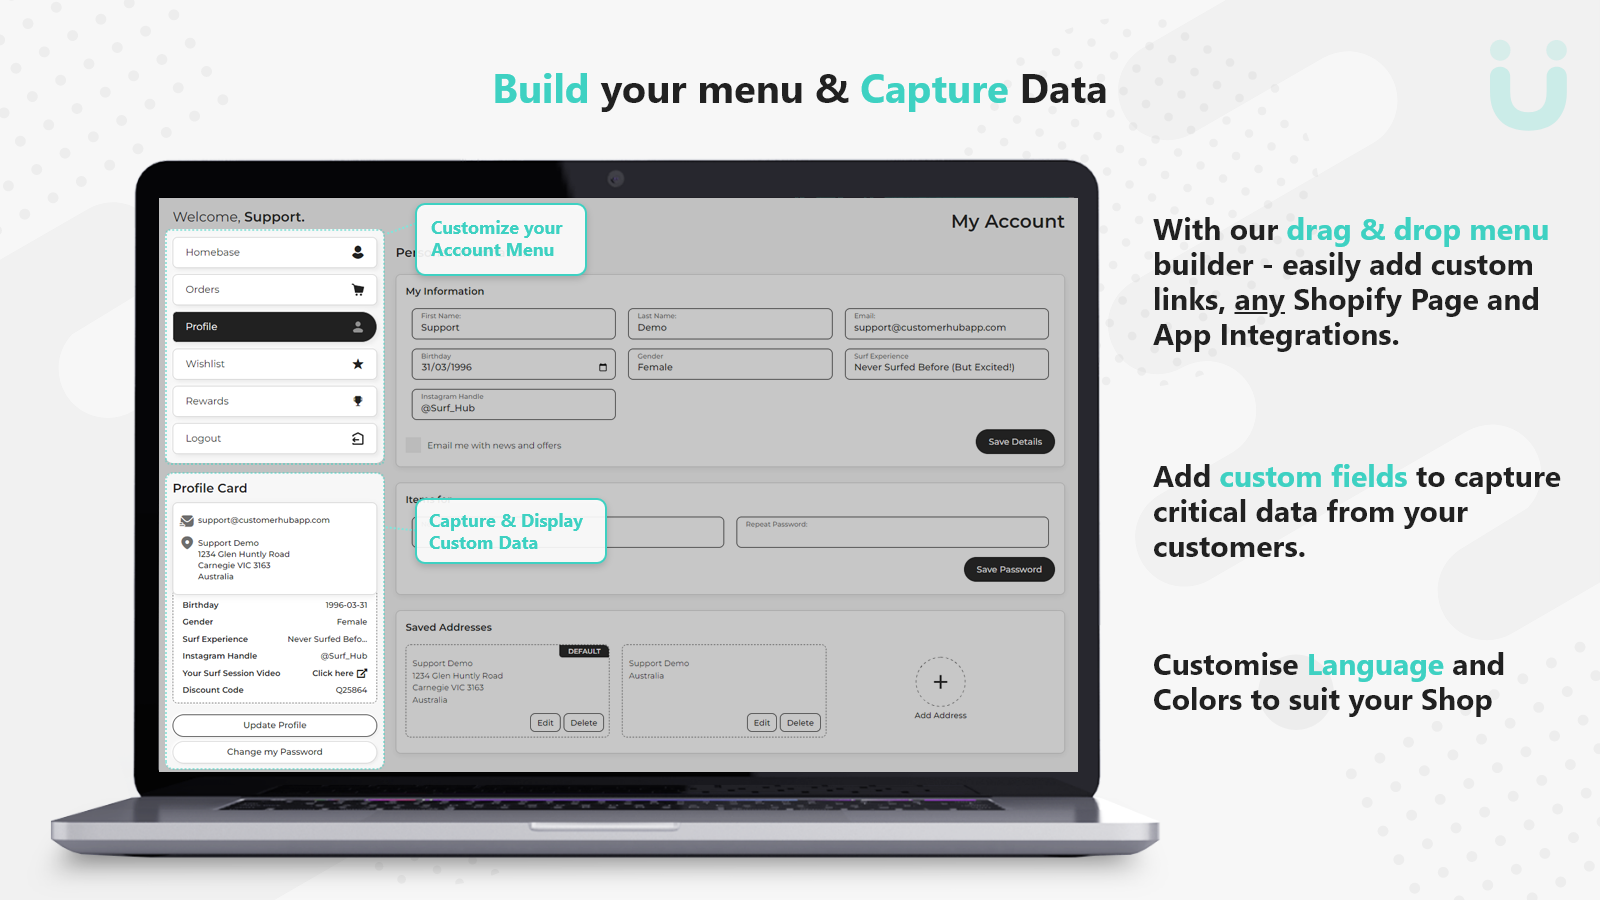 Construye tu menú y Captura tus Datos